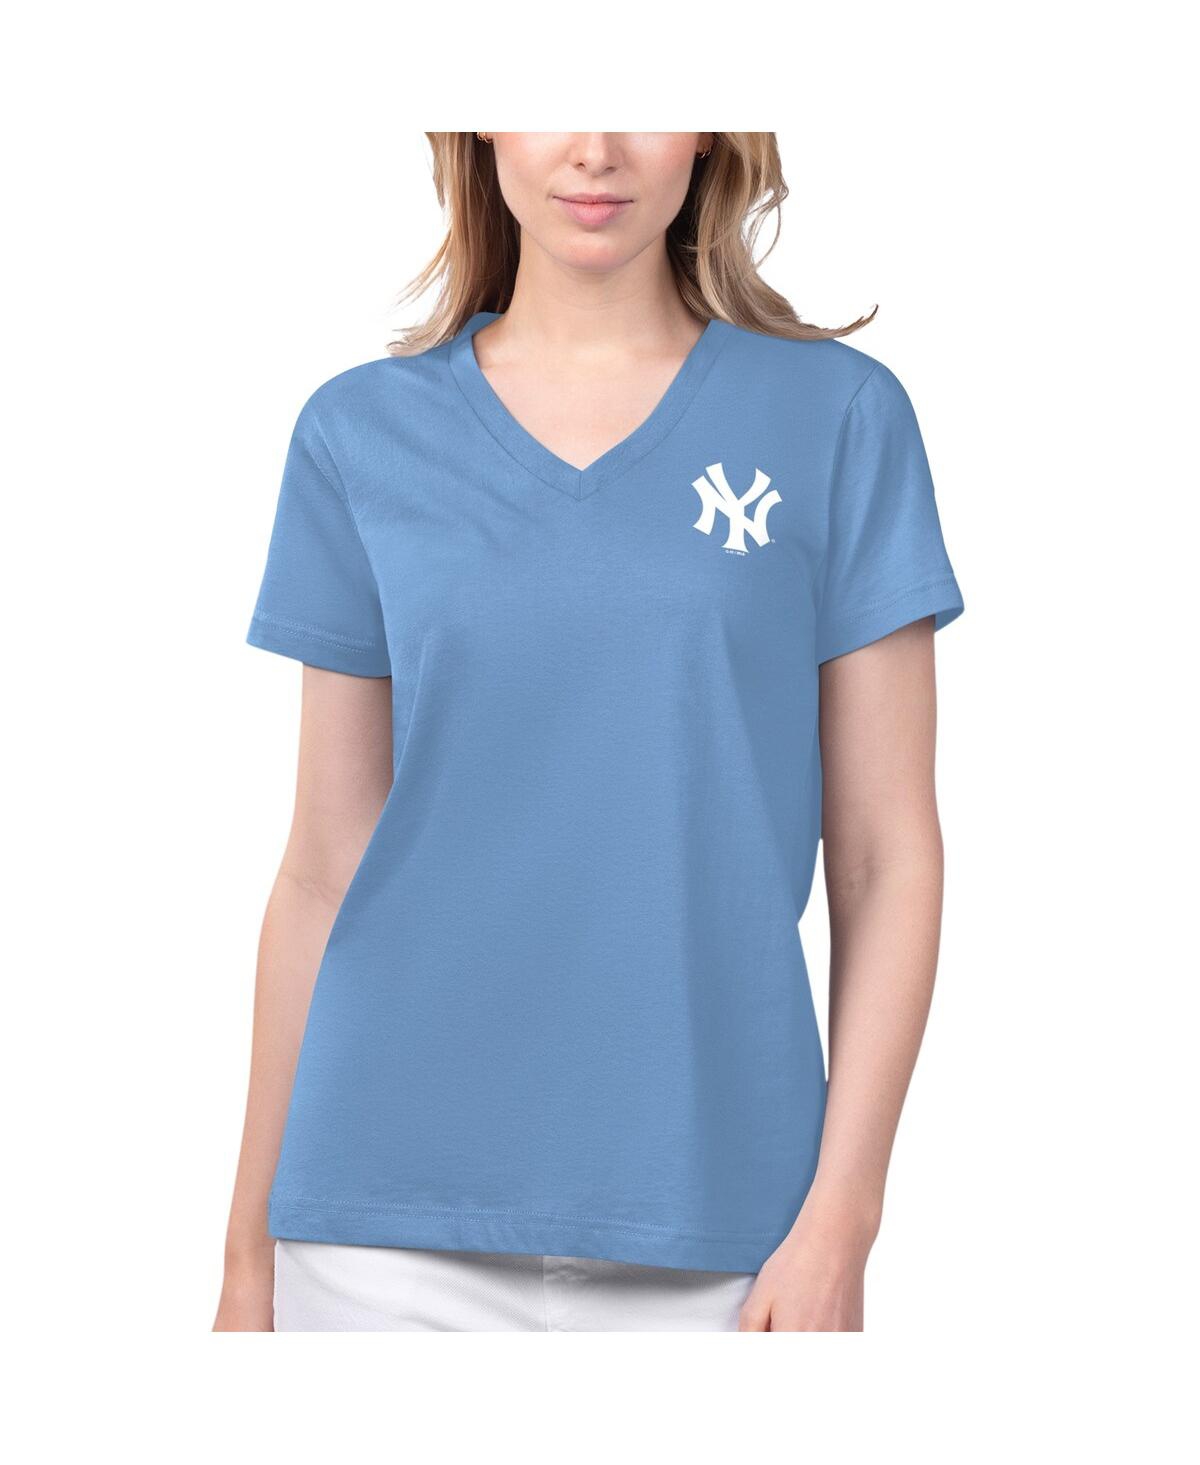 Women's Margaritaville Light Blue New York Yankees Game Time V-Neck T-shirt - Light Blue